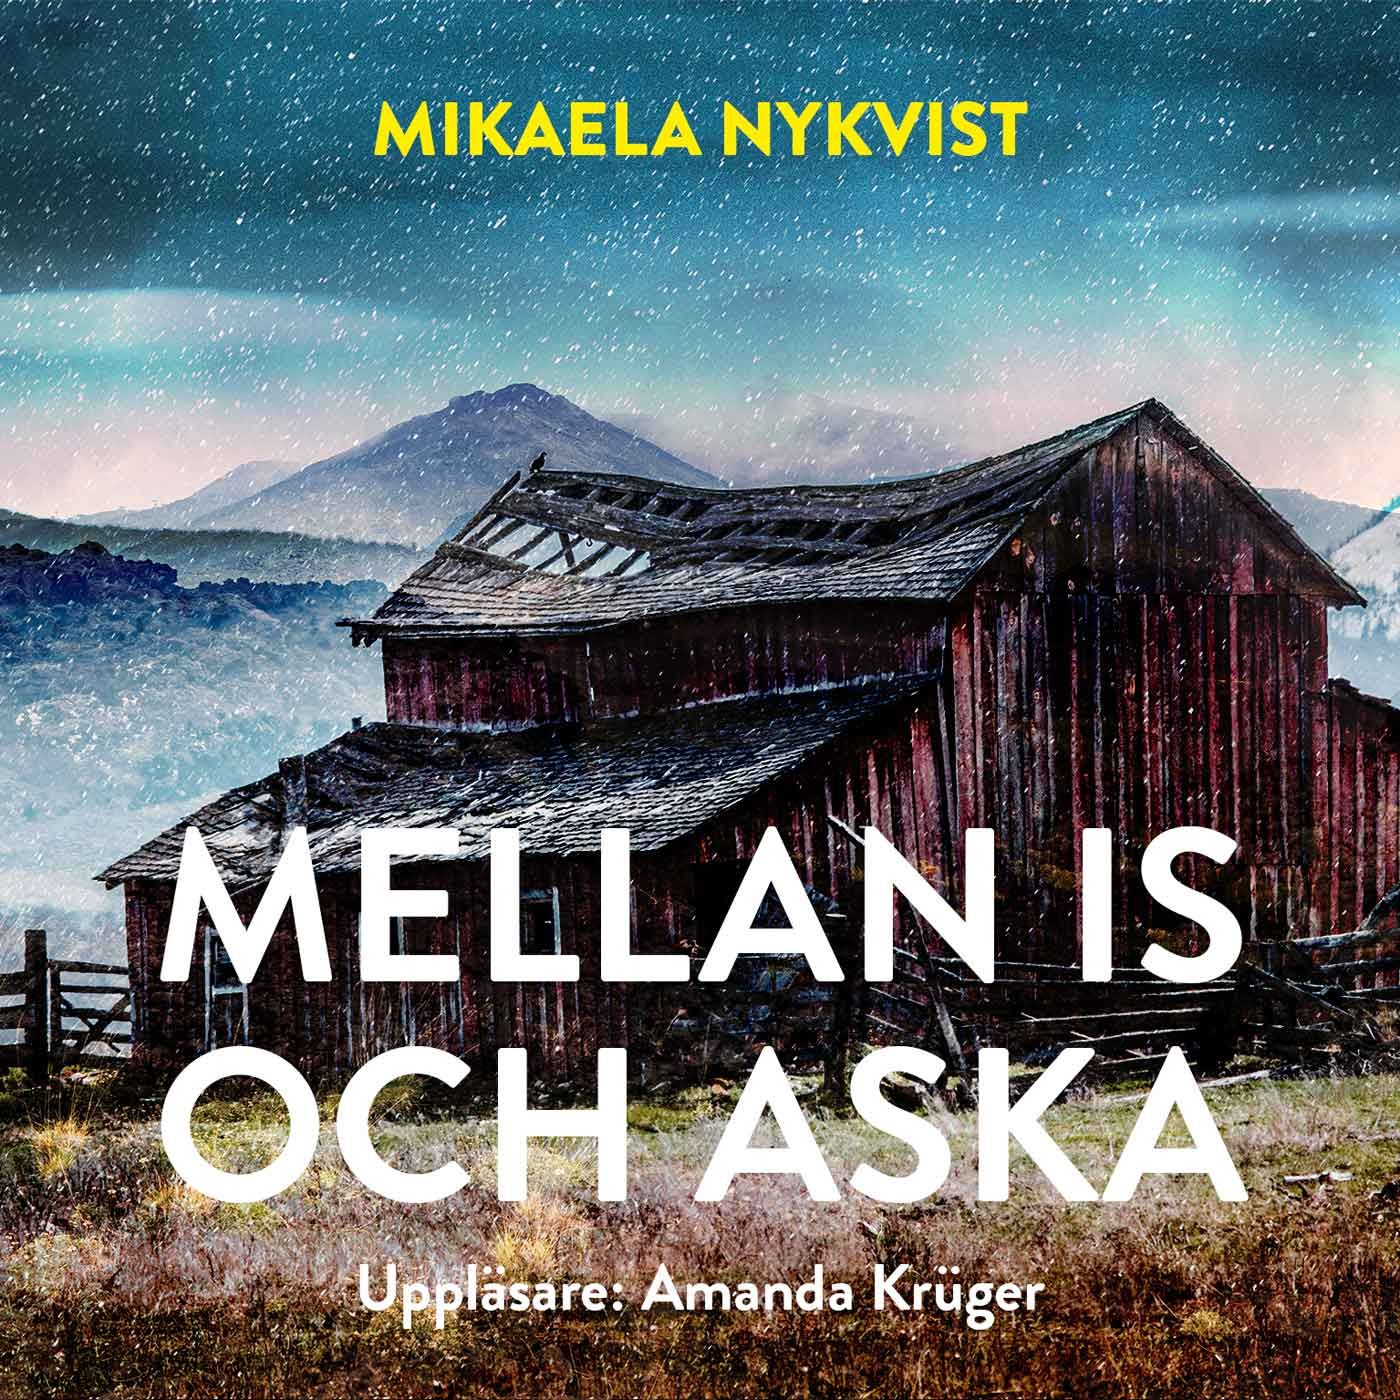 Mellan is och aska, e-bok av Mikaela Nykvist